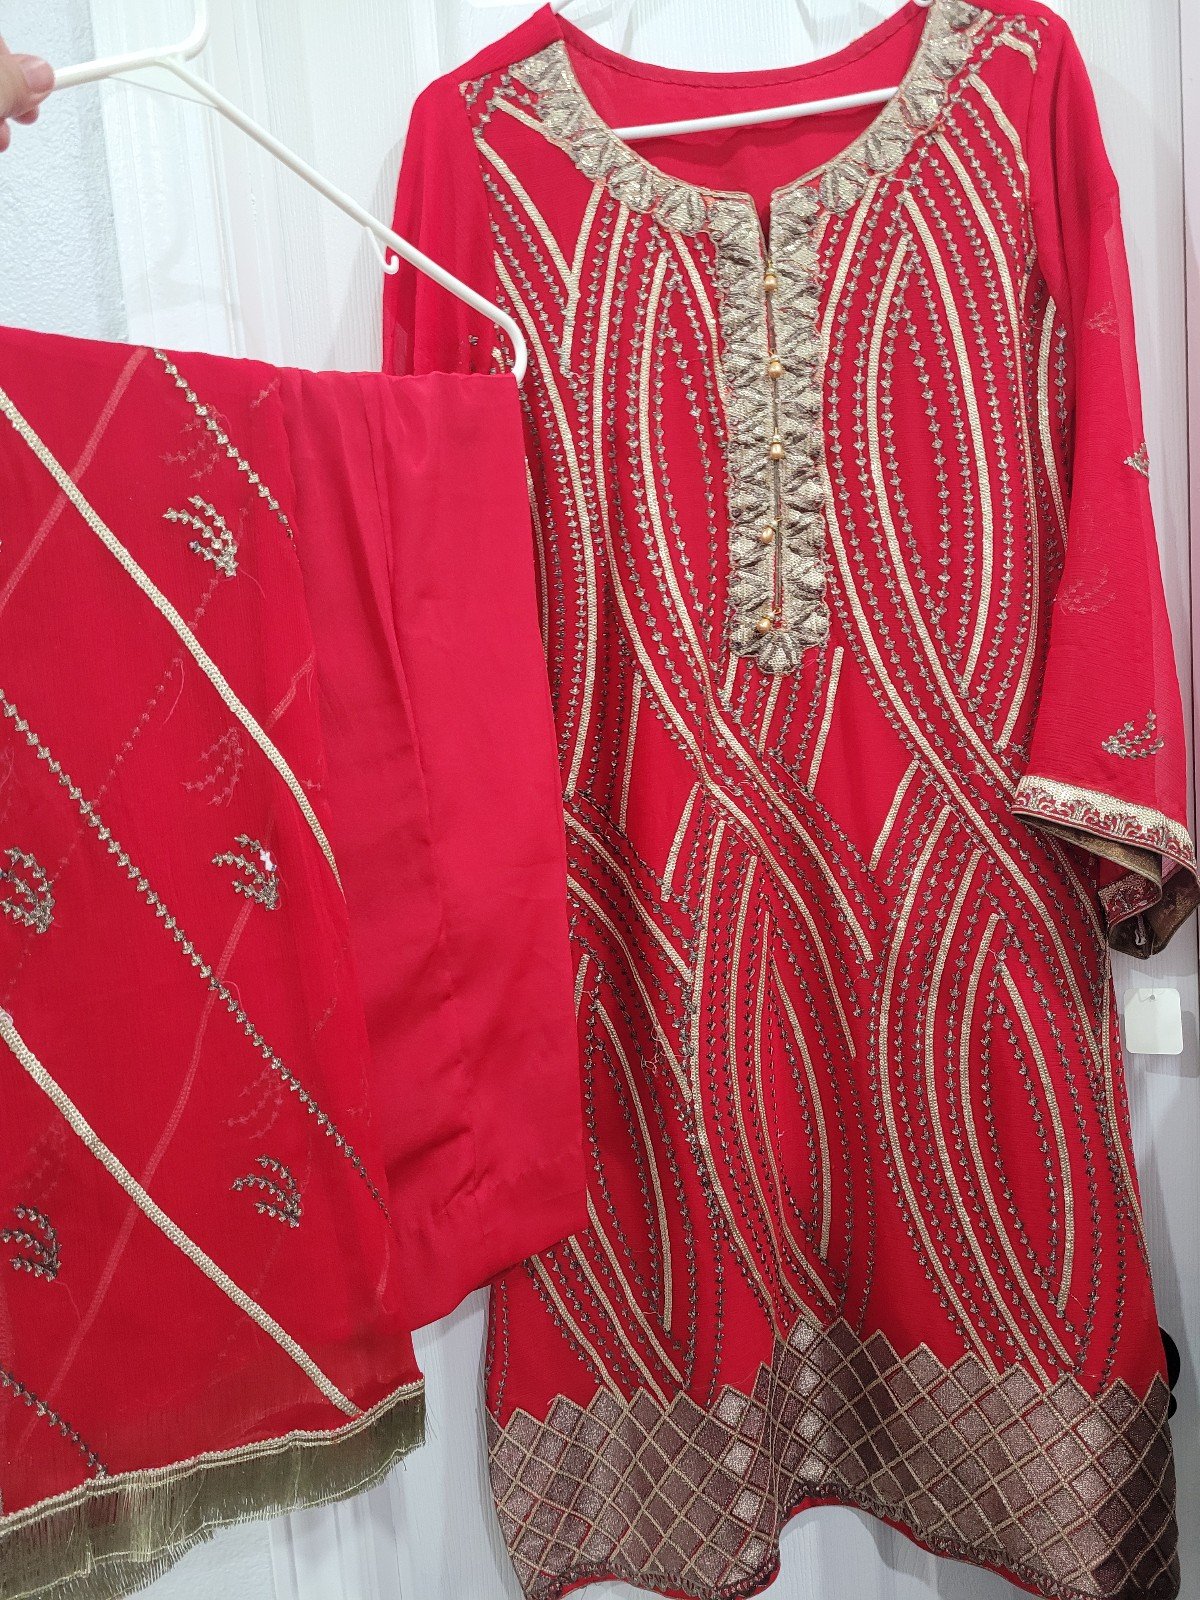 Pakistani dress size medium 9NczaDuuU